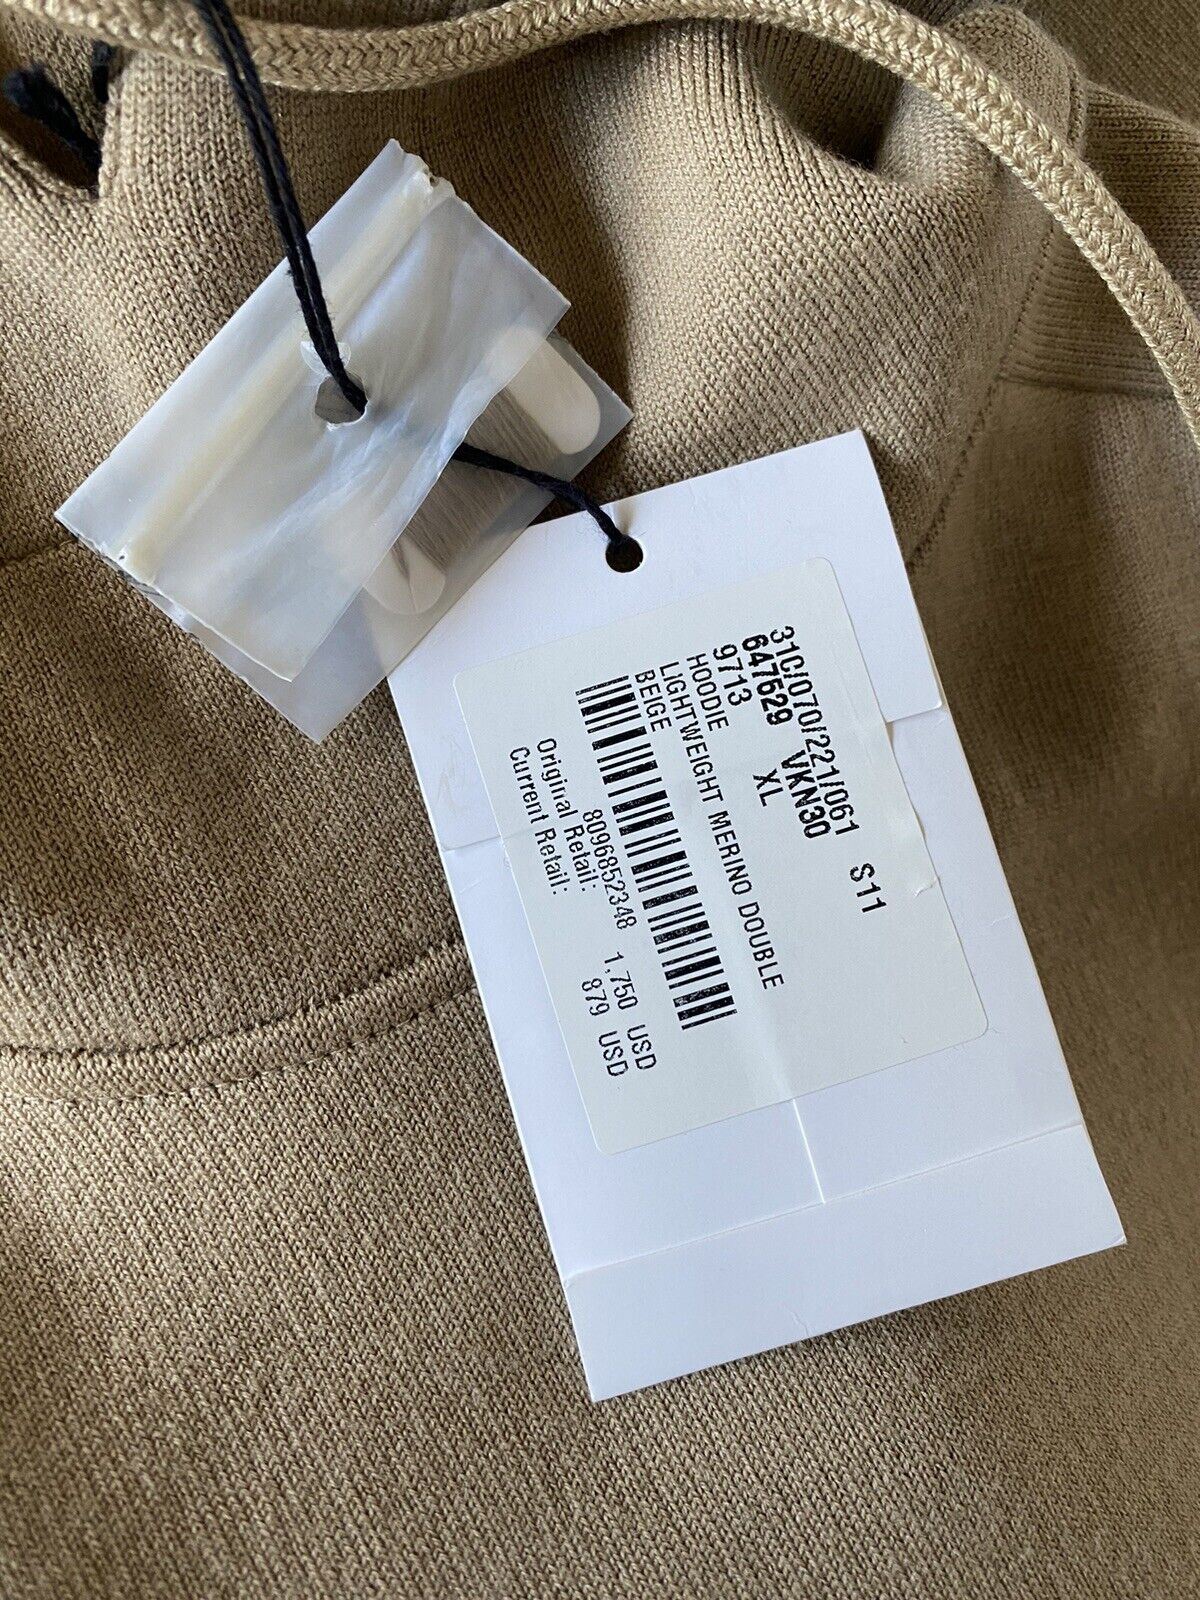 NWT $1750 Женская толстовка с капюшоном Bottega Veneta Шерстяной свитер Бежевый XL 647529 Италия 